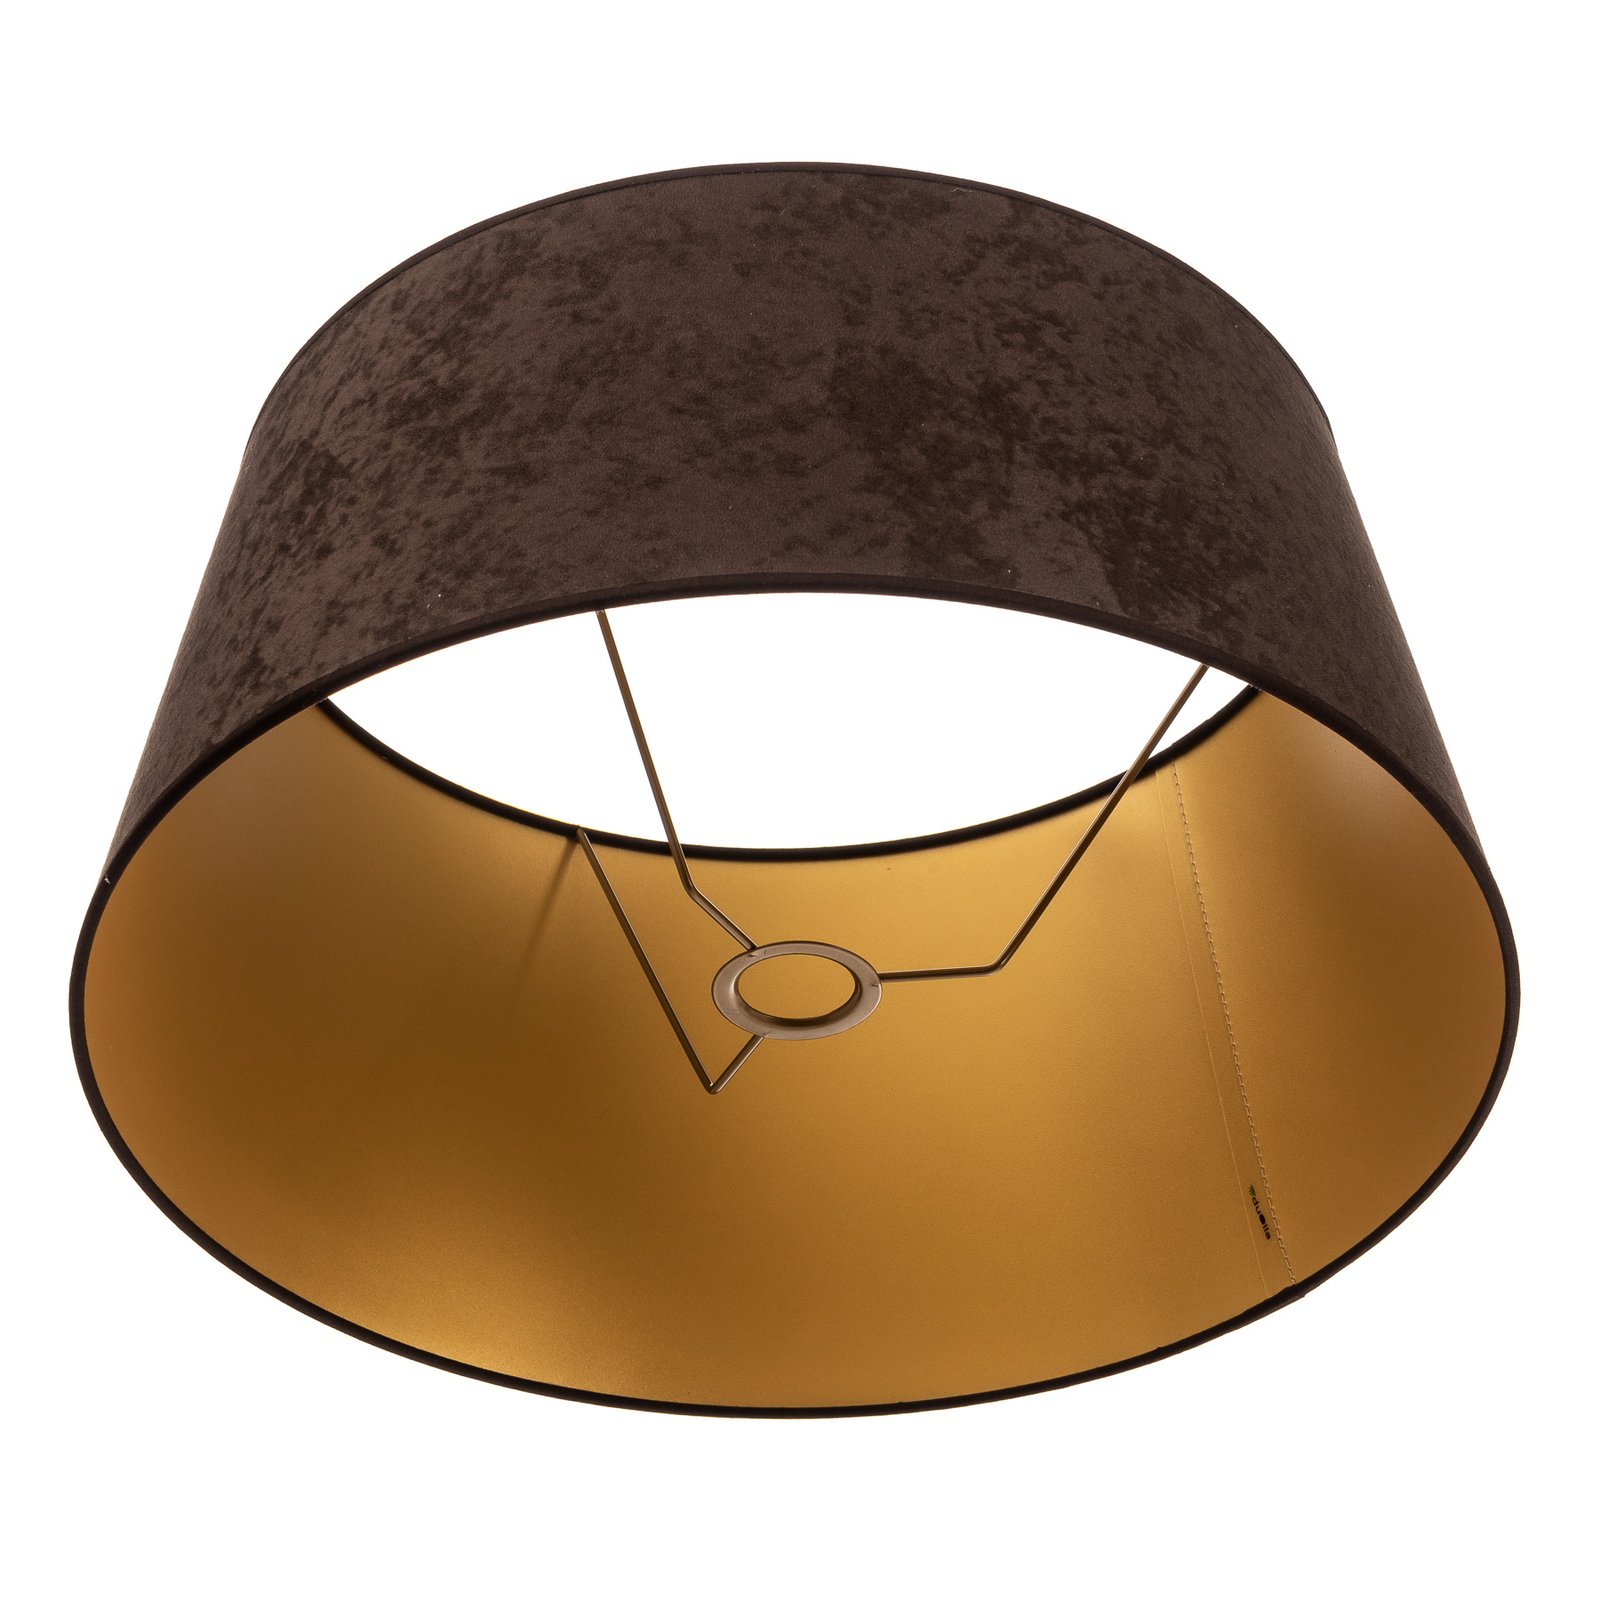 Kúp alakú lámpaernyő, magasság 25,5 cm, barna/arany